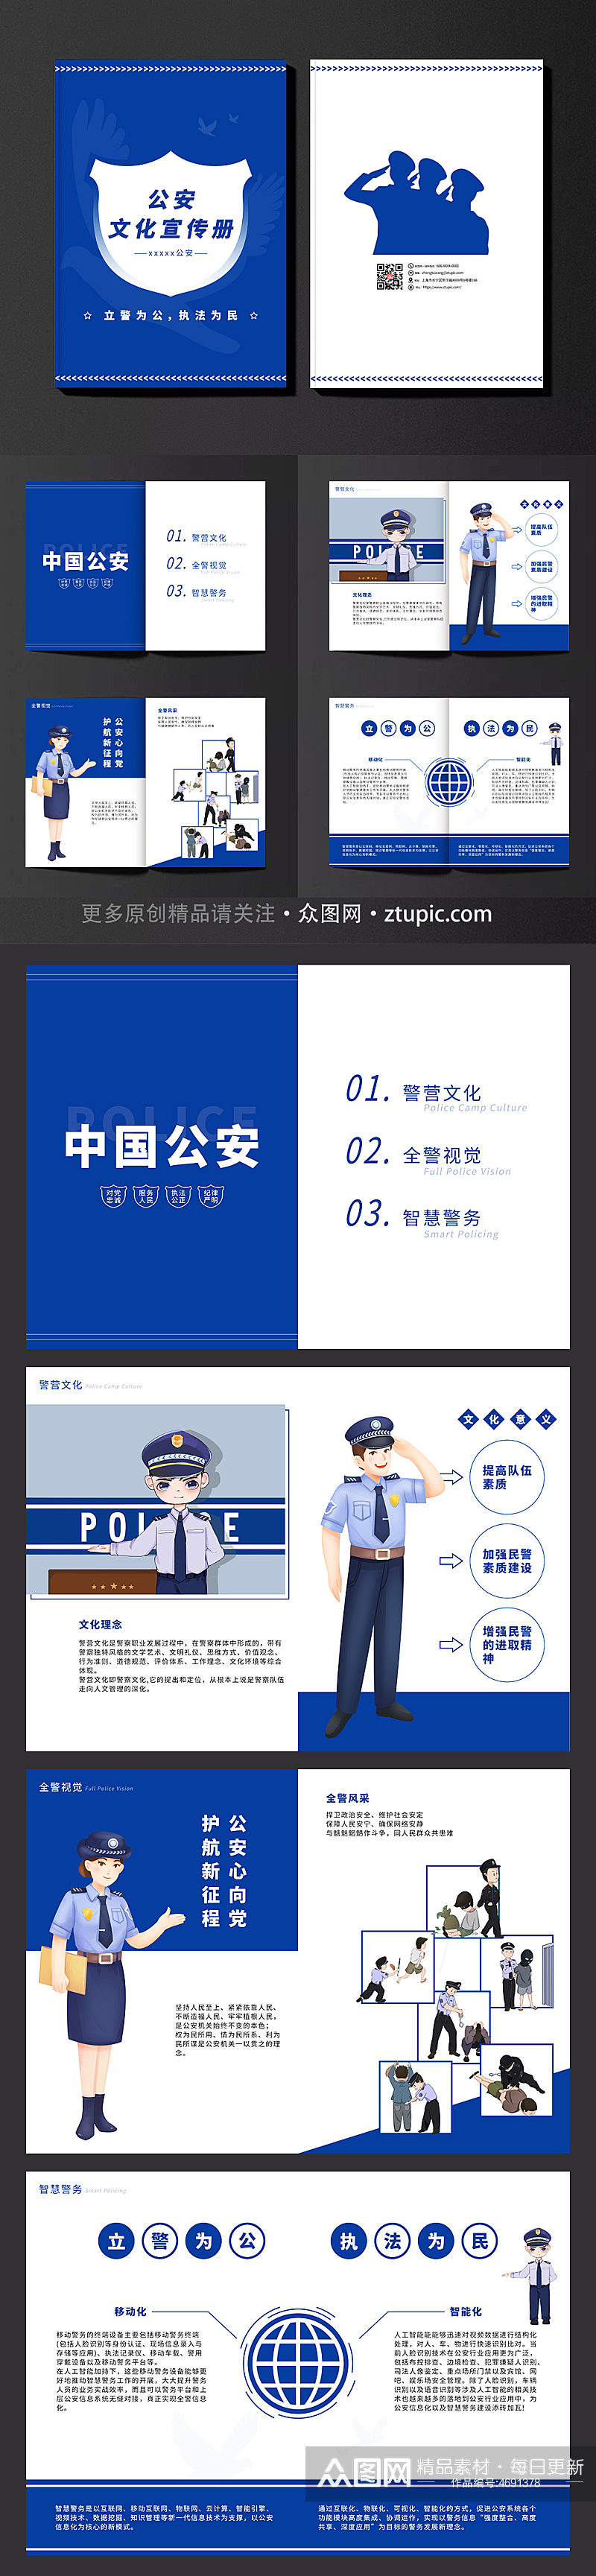 蓝色公安文化宣传册公安交警宣传画册素材